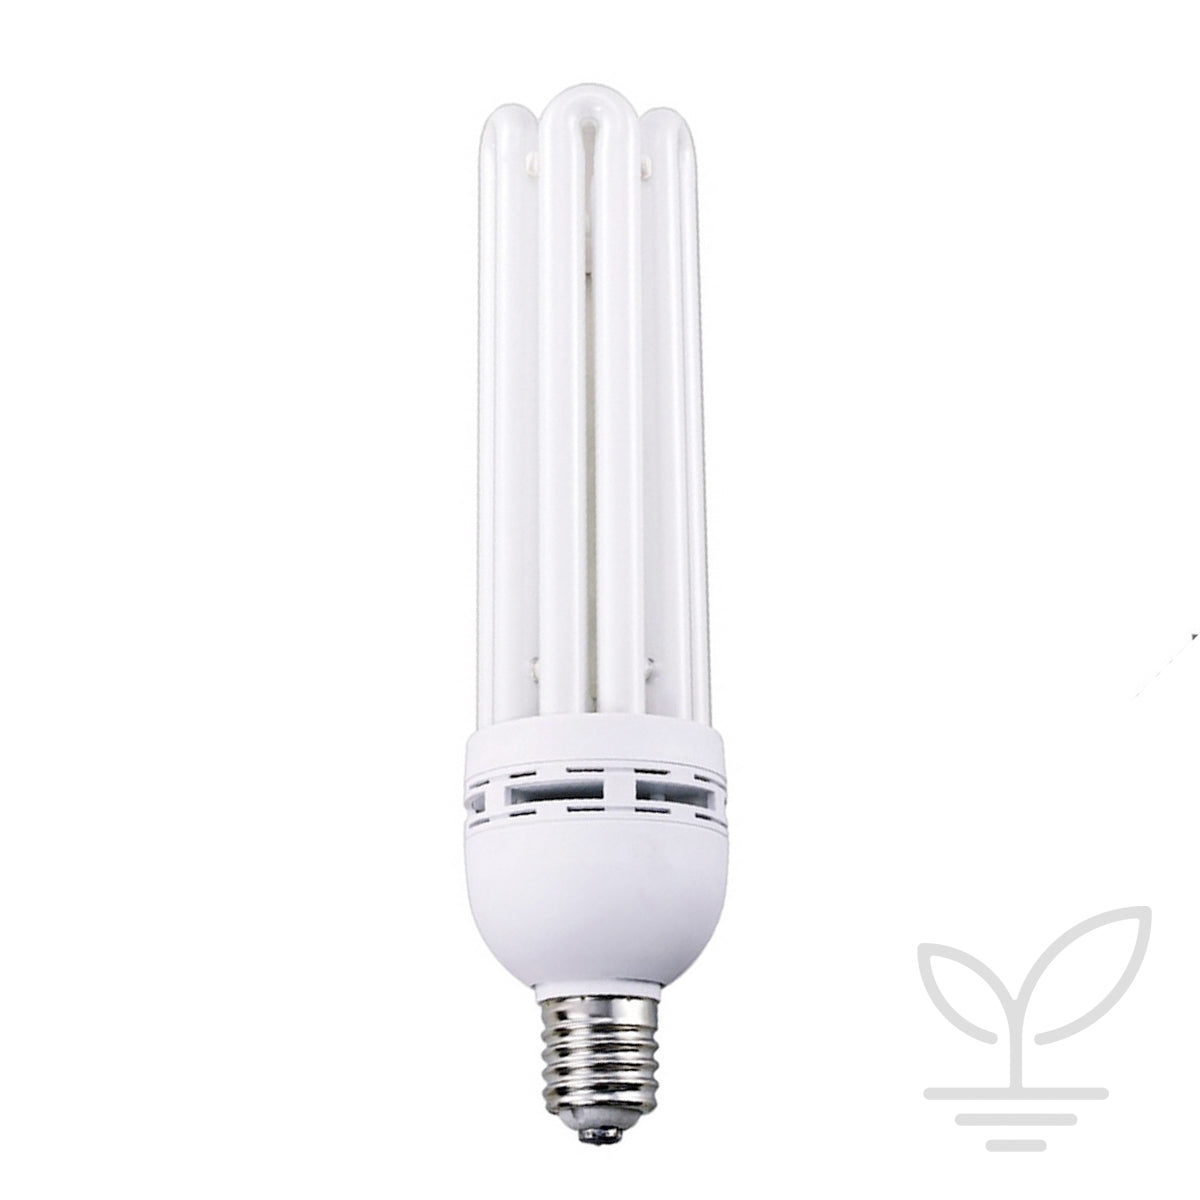 125W CFL Vegetative Lamp - 6400K